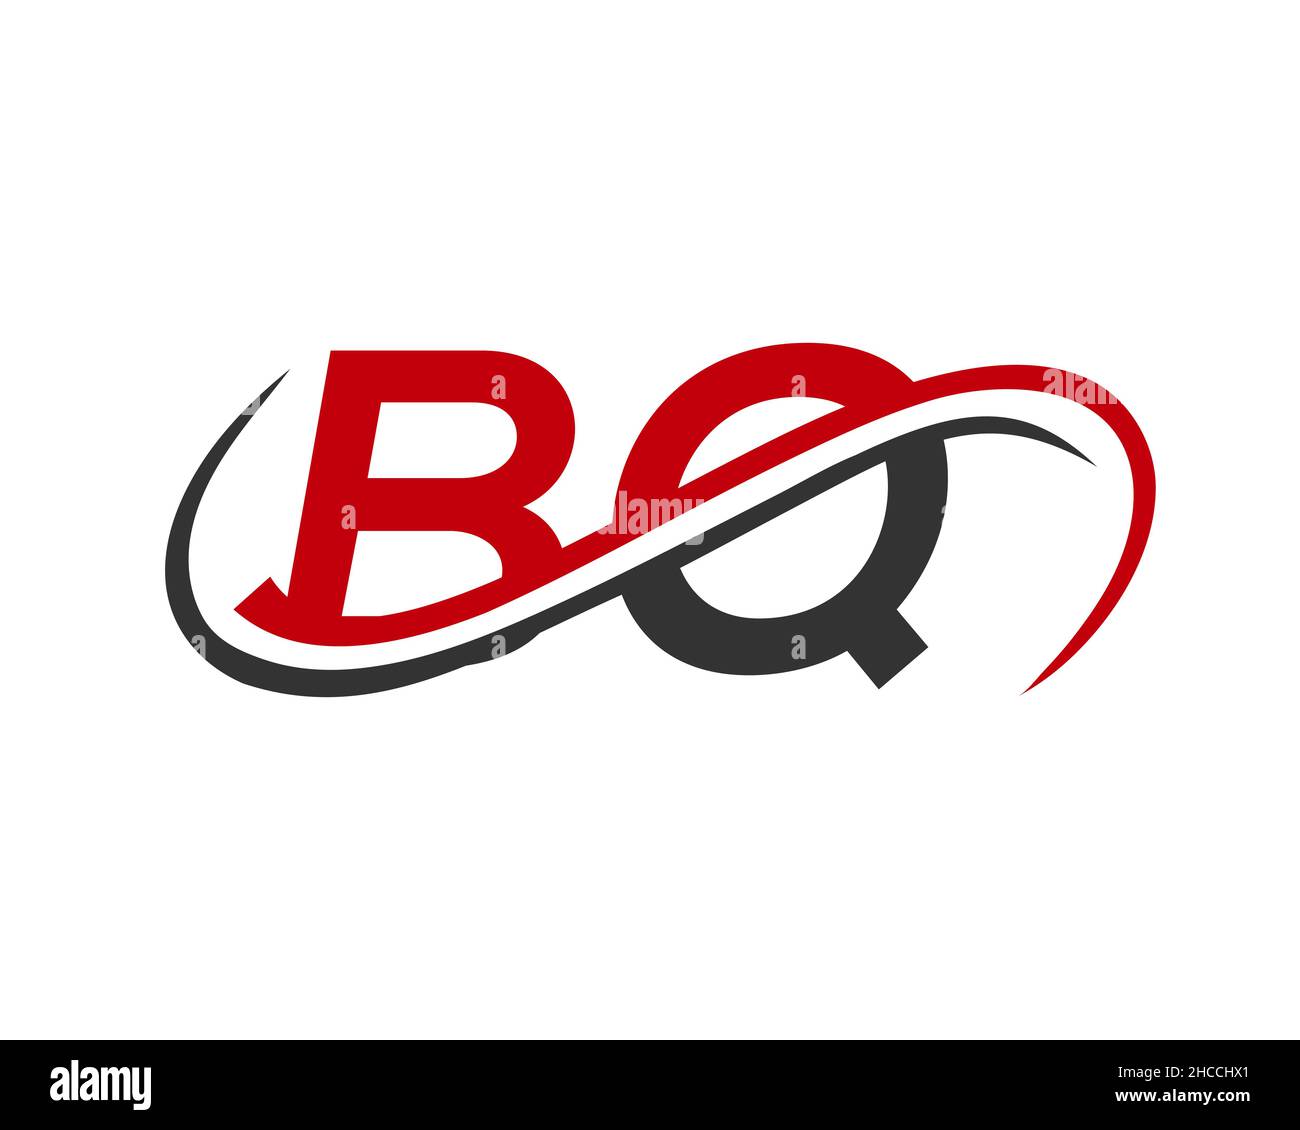 Red Packet Design 红包封设计 - Bel Koo - Logo Design, Brand